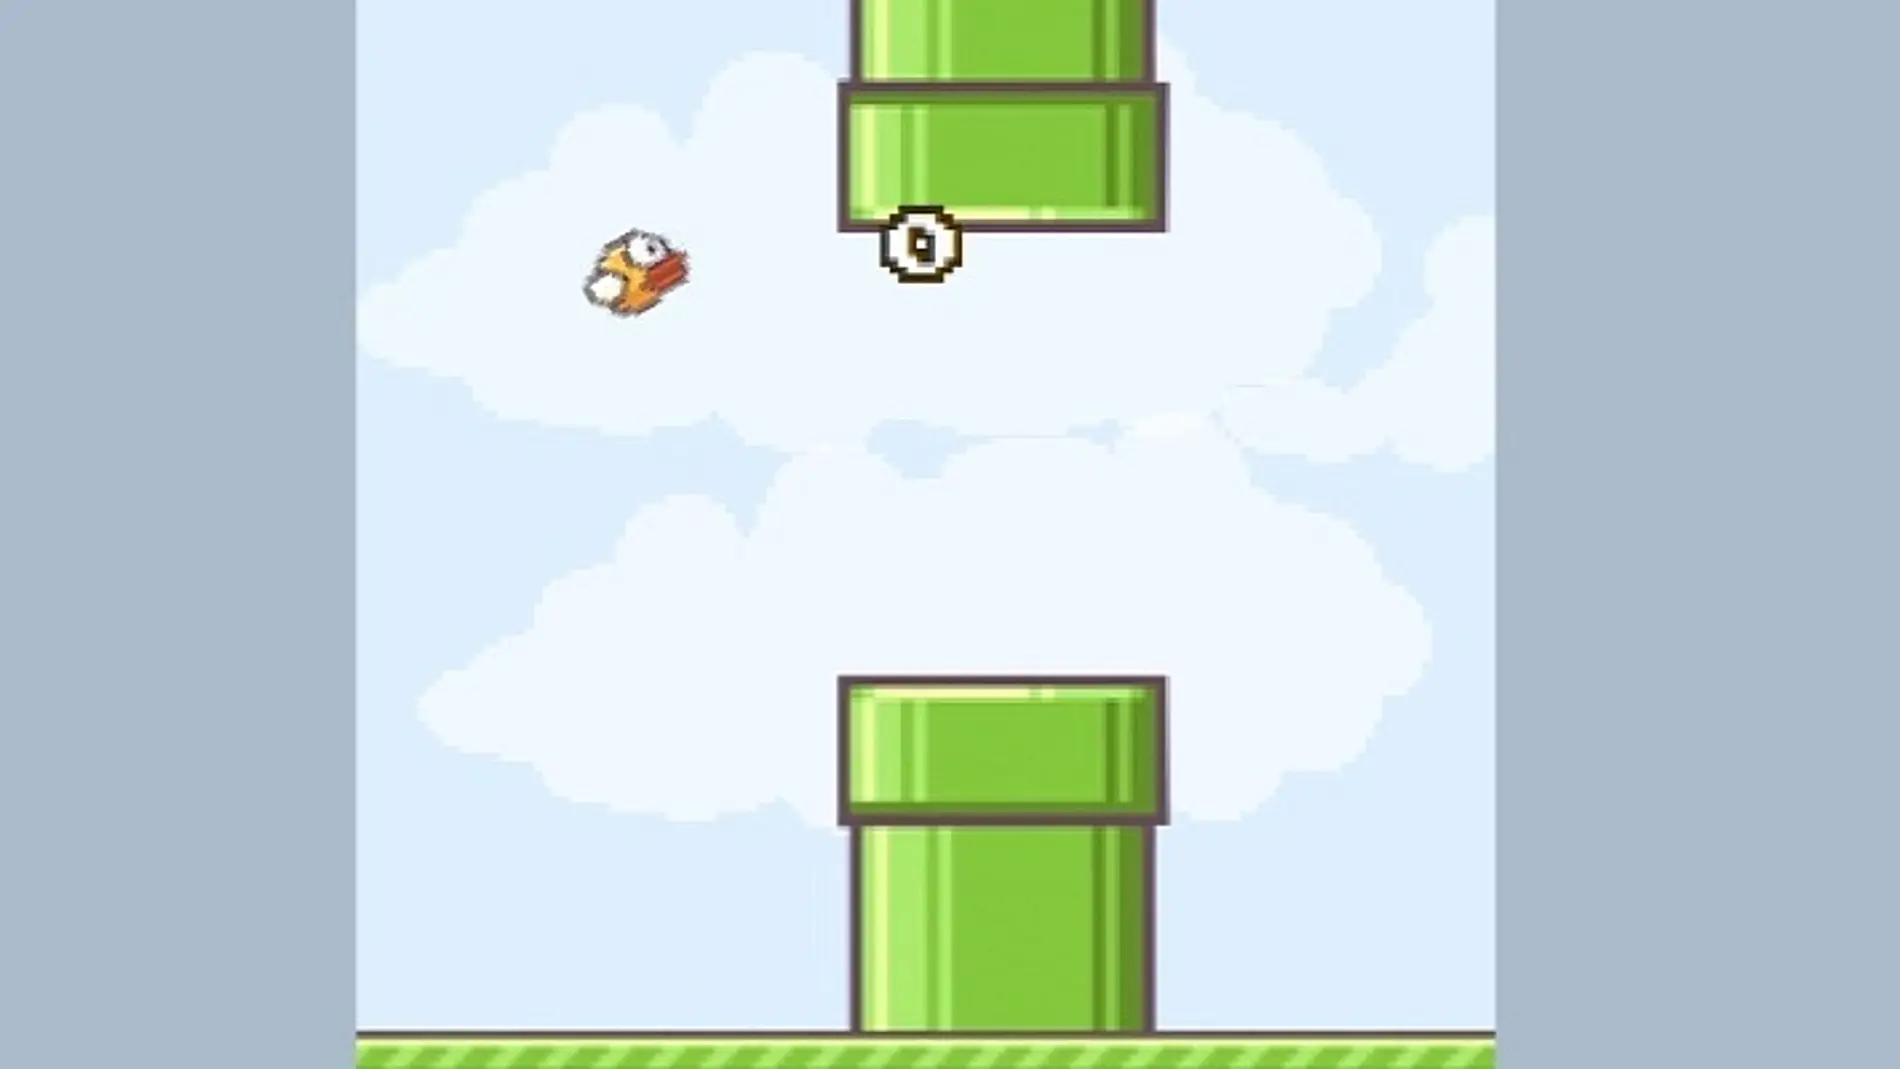 Flappy Bird sobrevive en versión online